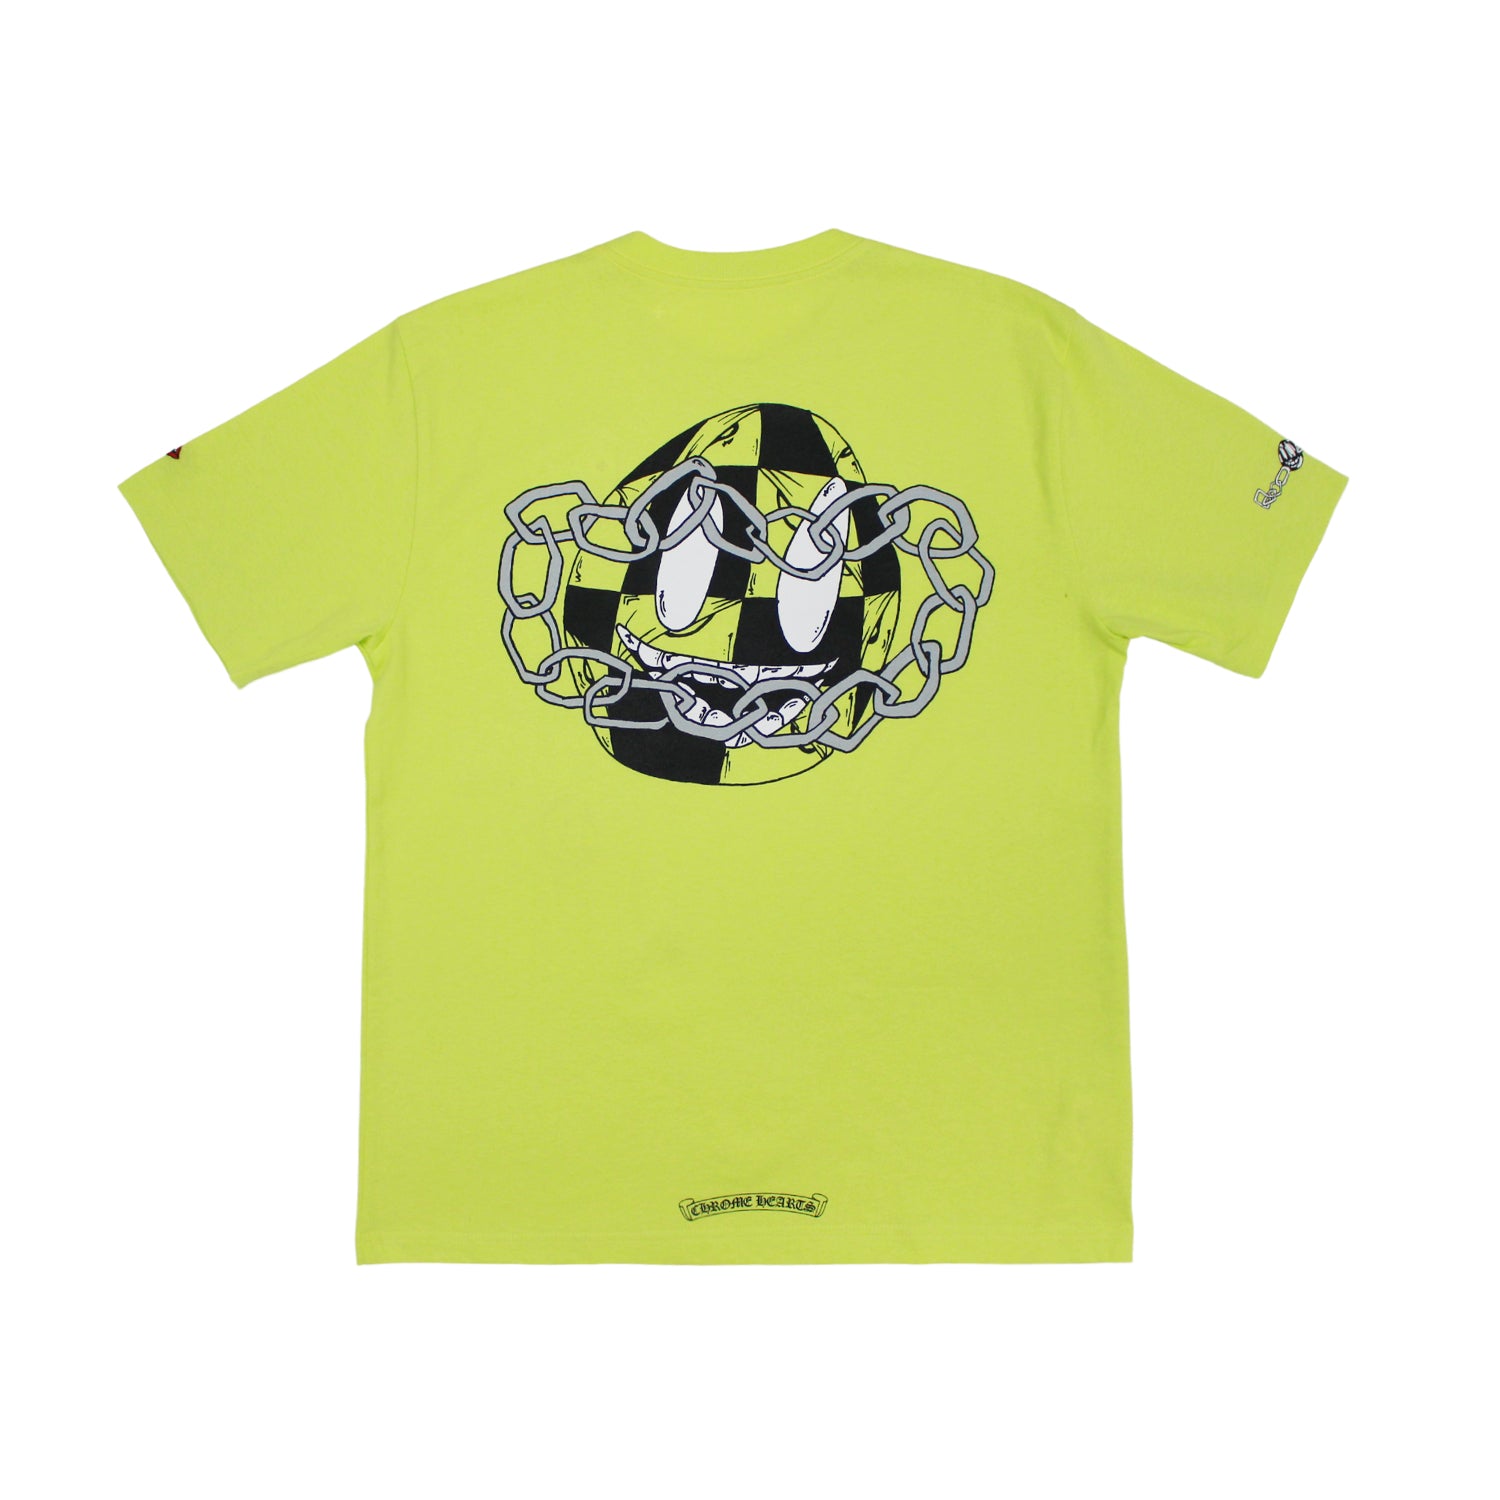 Chrome Hearts Matty Boy Link T-shirt Lime Green Men's - US